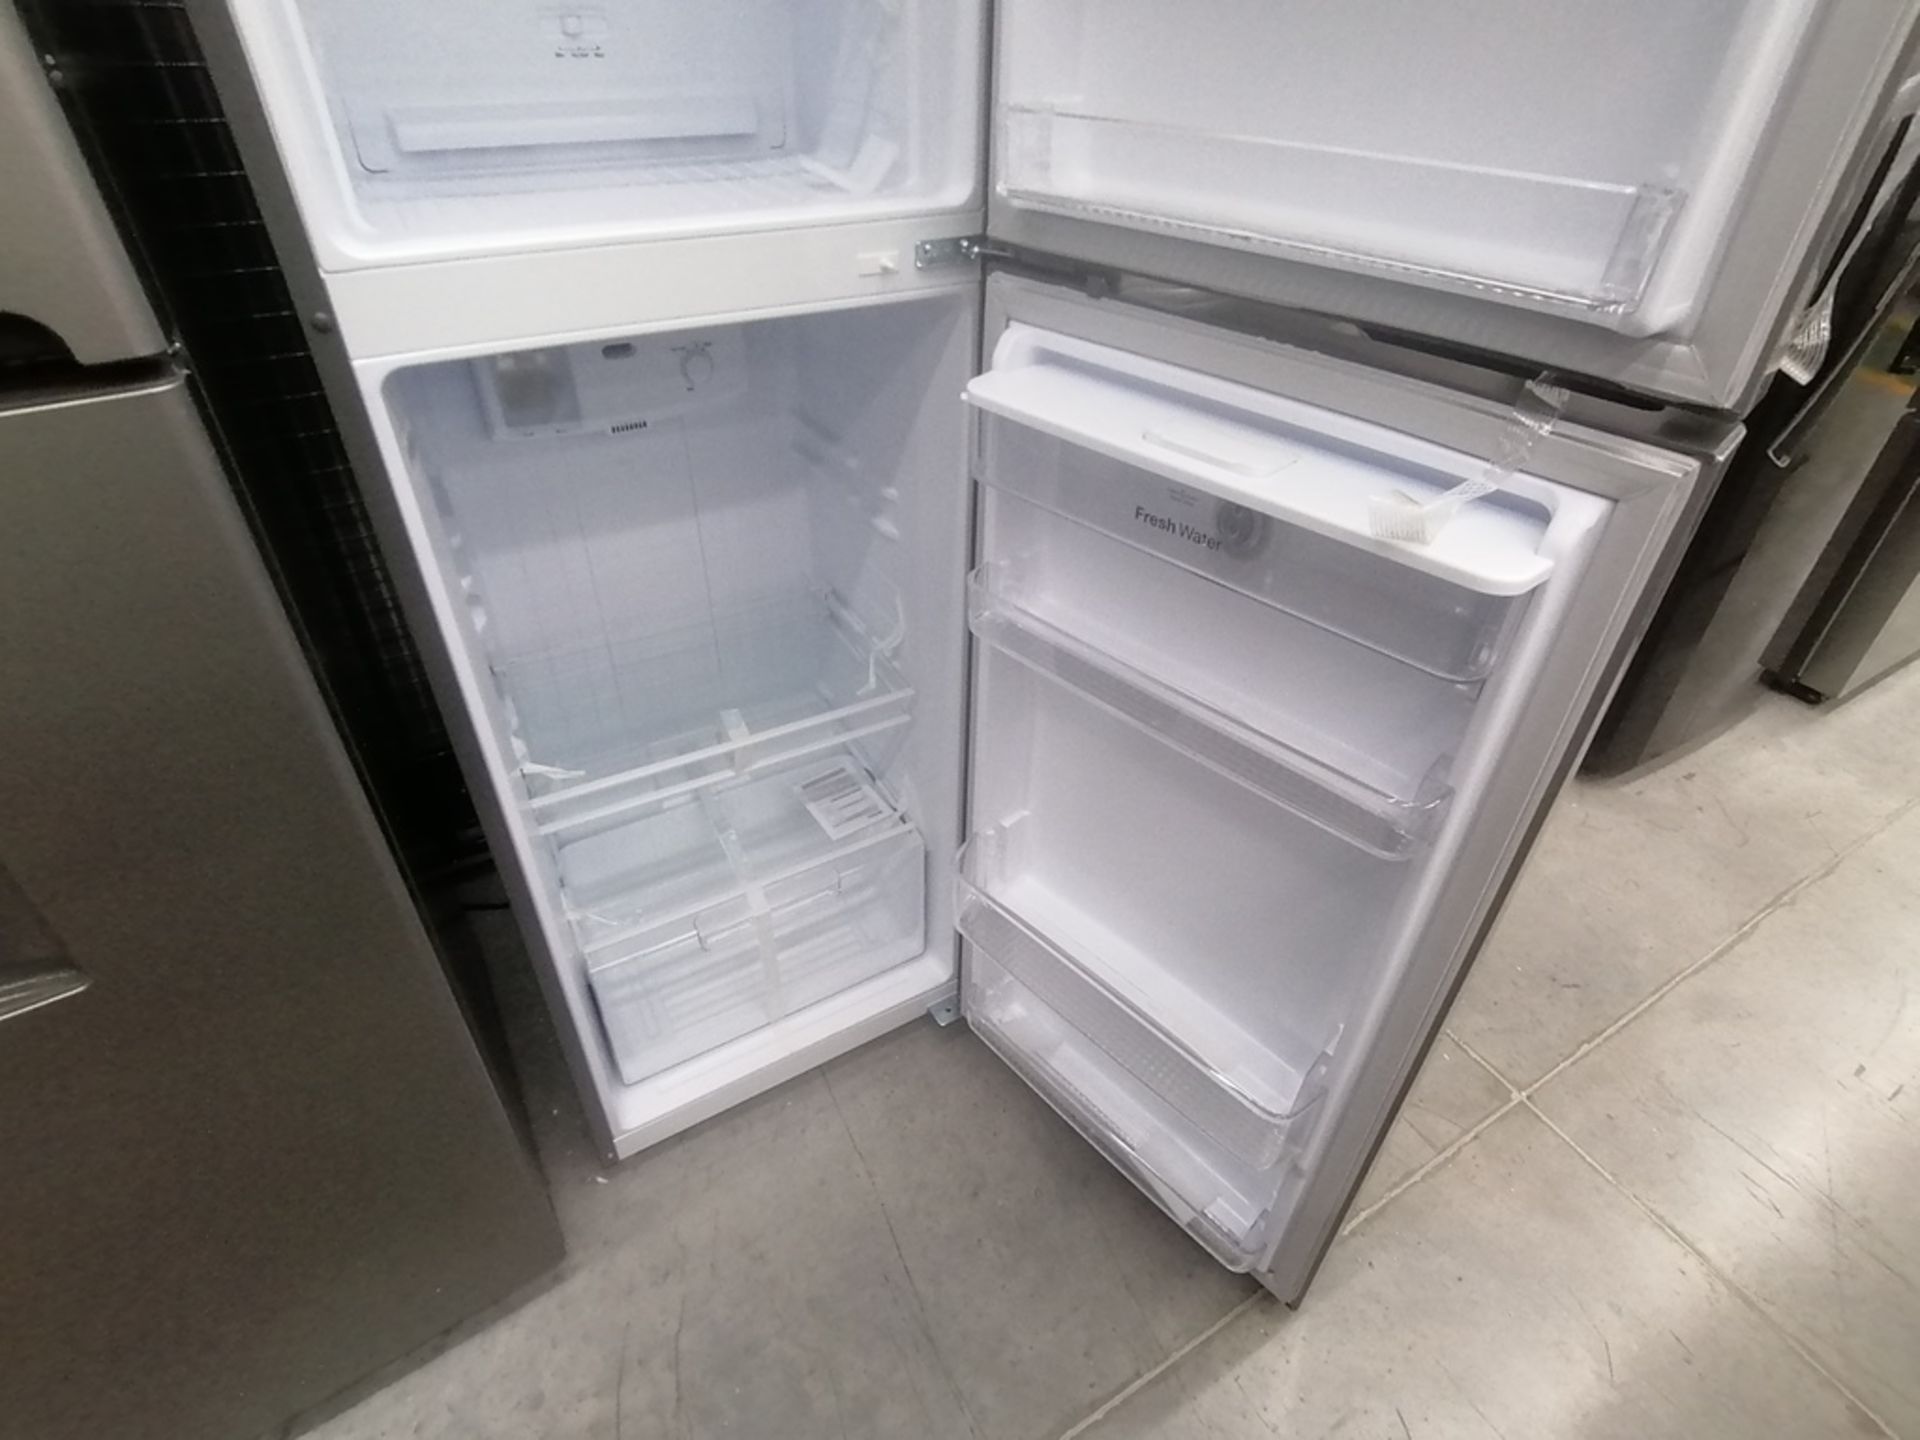 Lote de 2 refrigeradores incluye: 1 Refrigerador con dispensador de agua, Marca Winia, Modelo DFR32 - Image 9 of 15